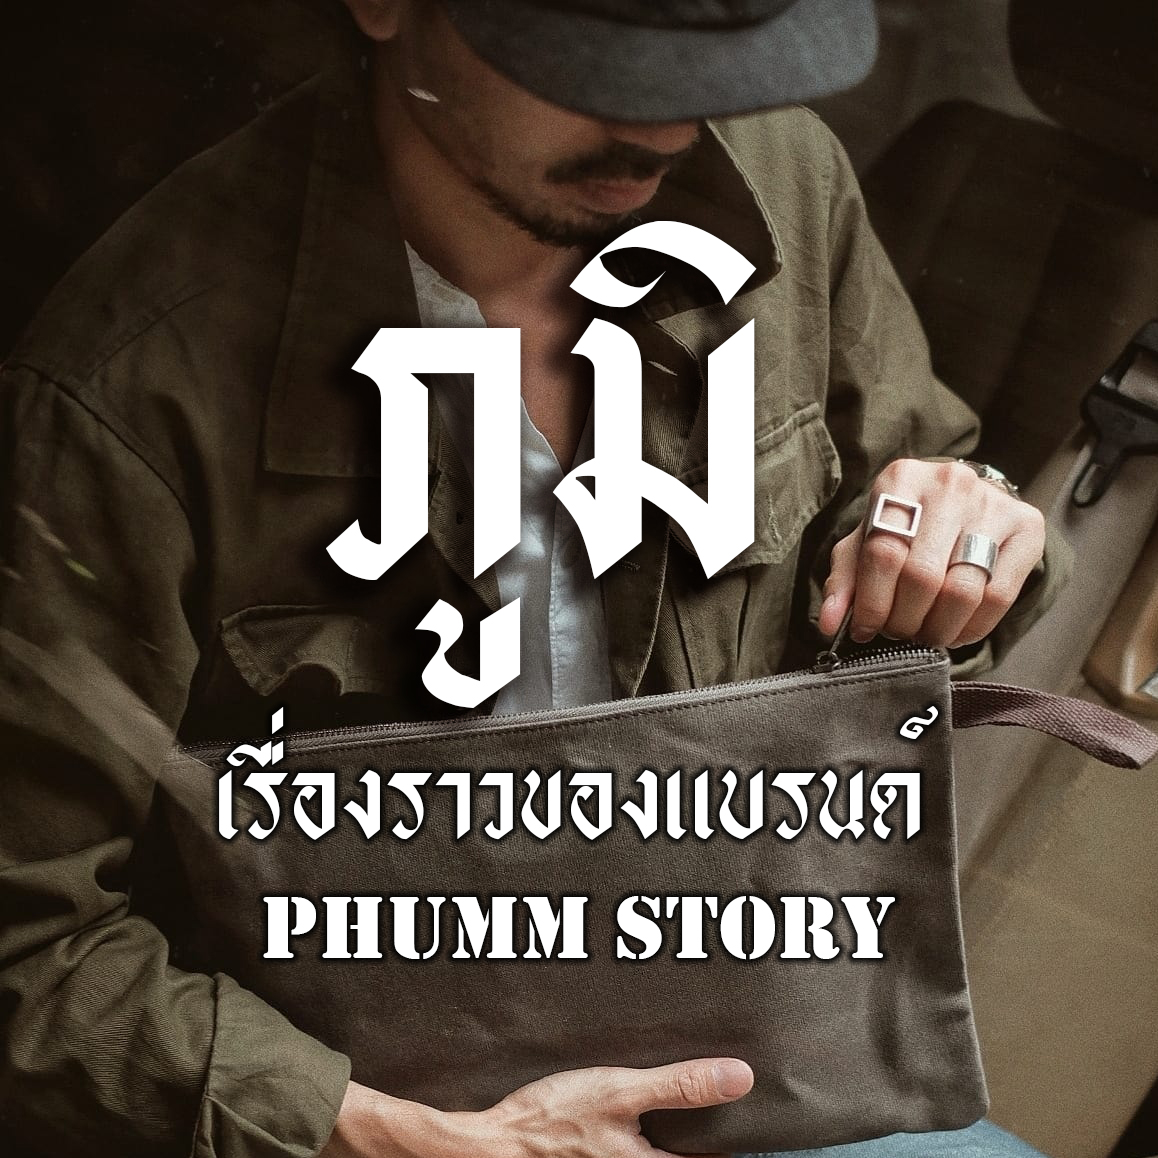 PHUMM STORY